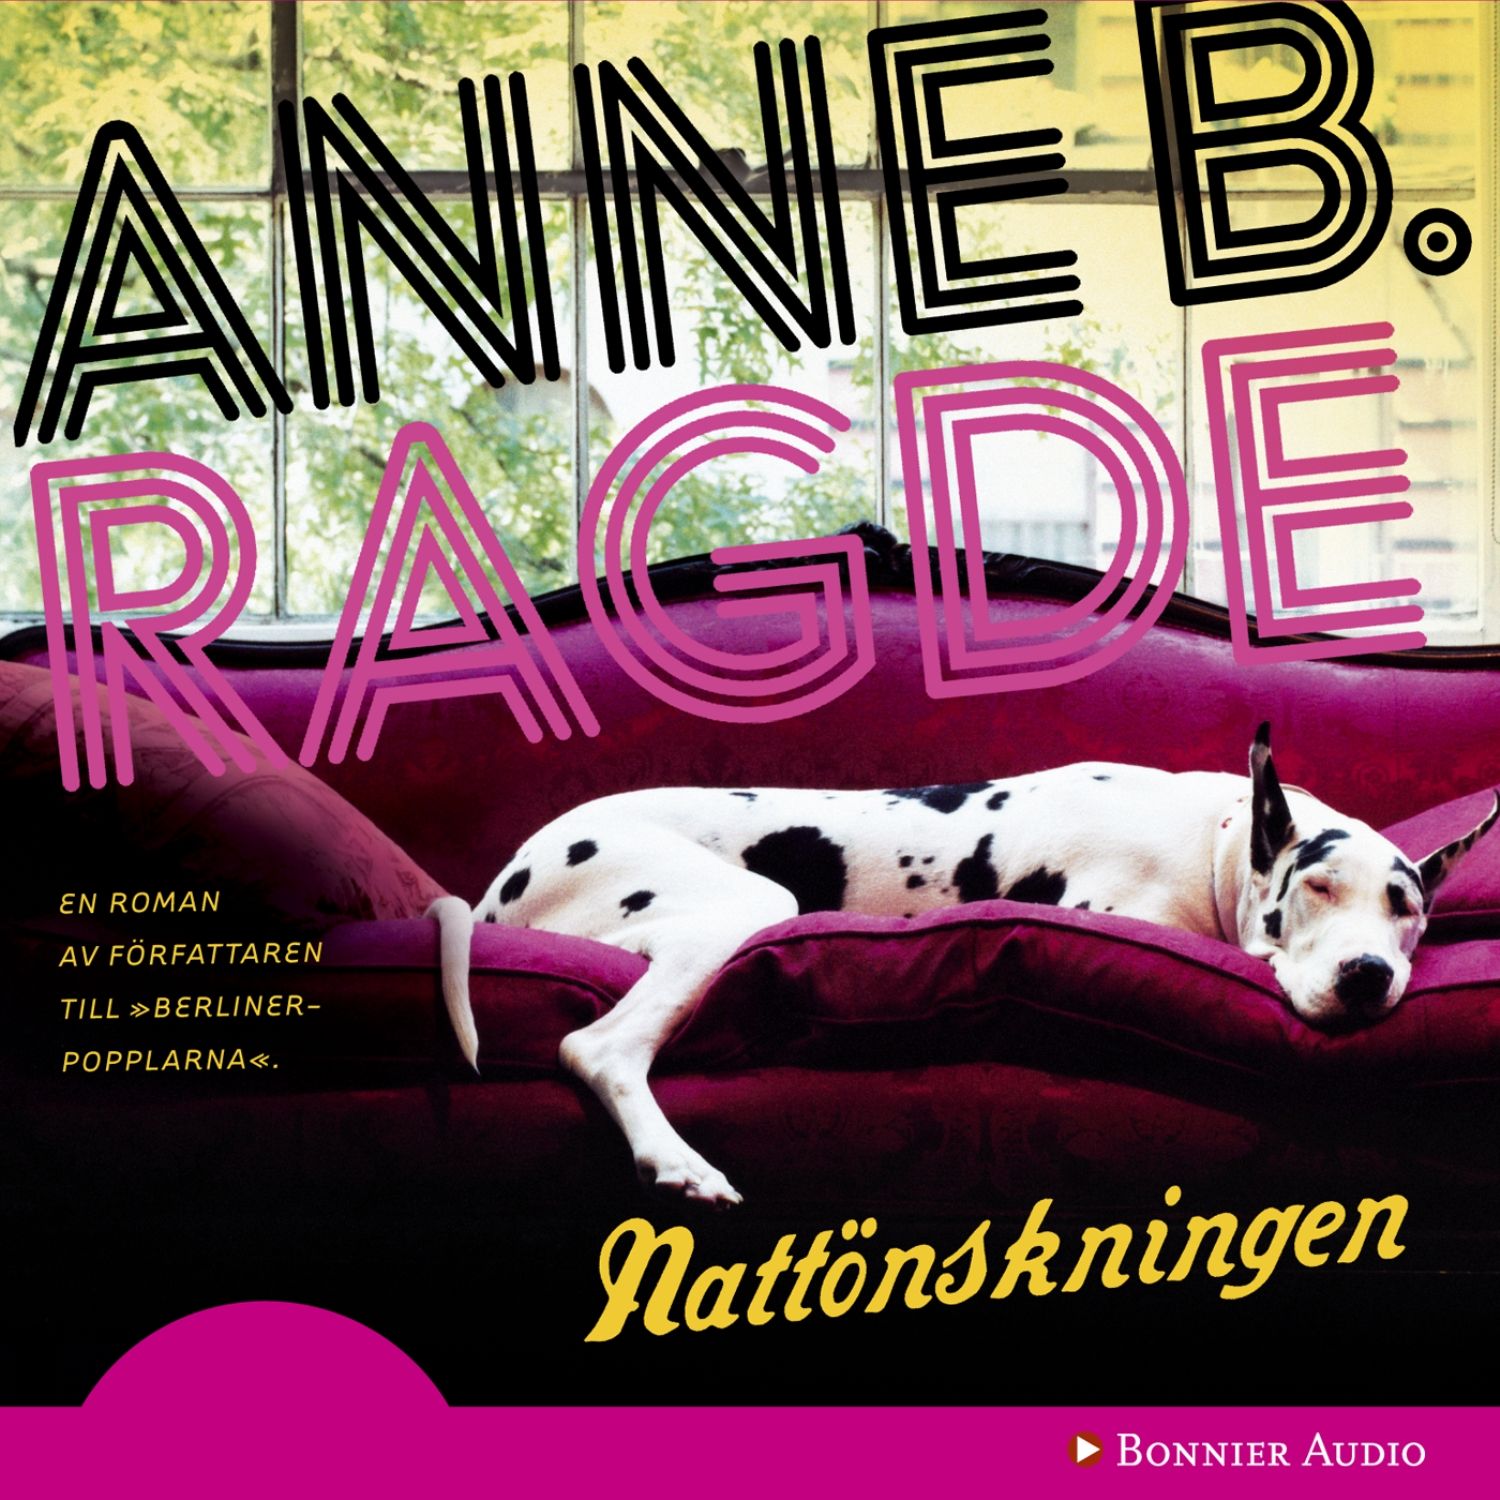 Nattönskningen, audiobook by Anne B. Ragde